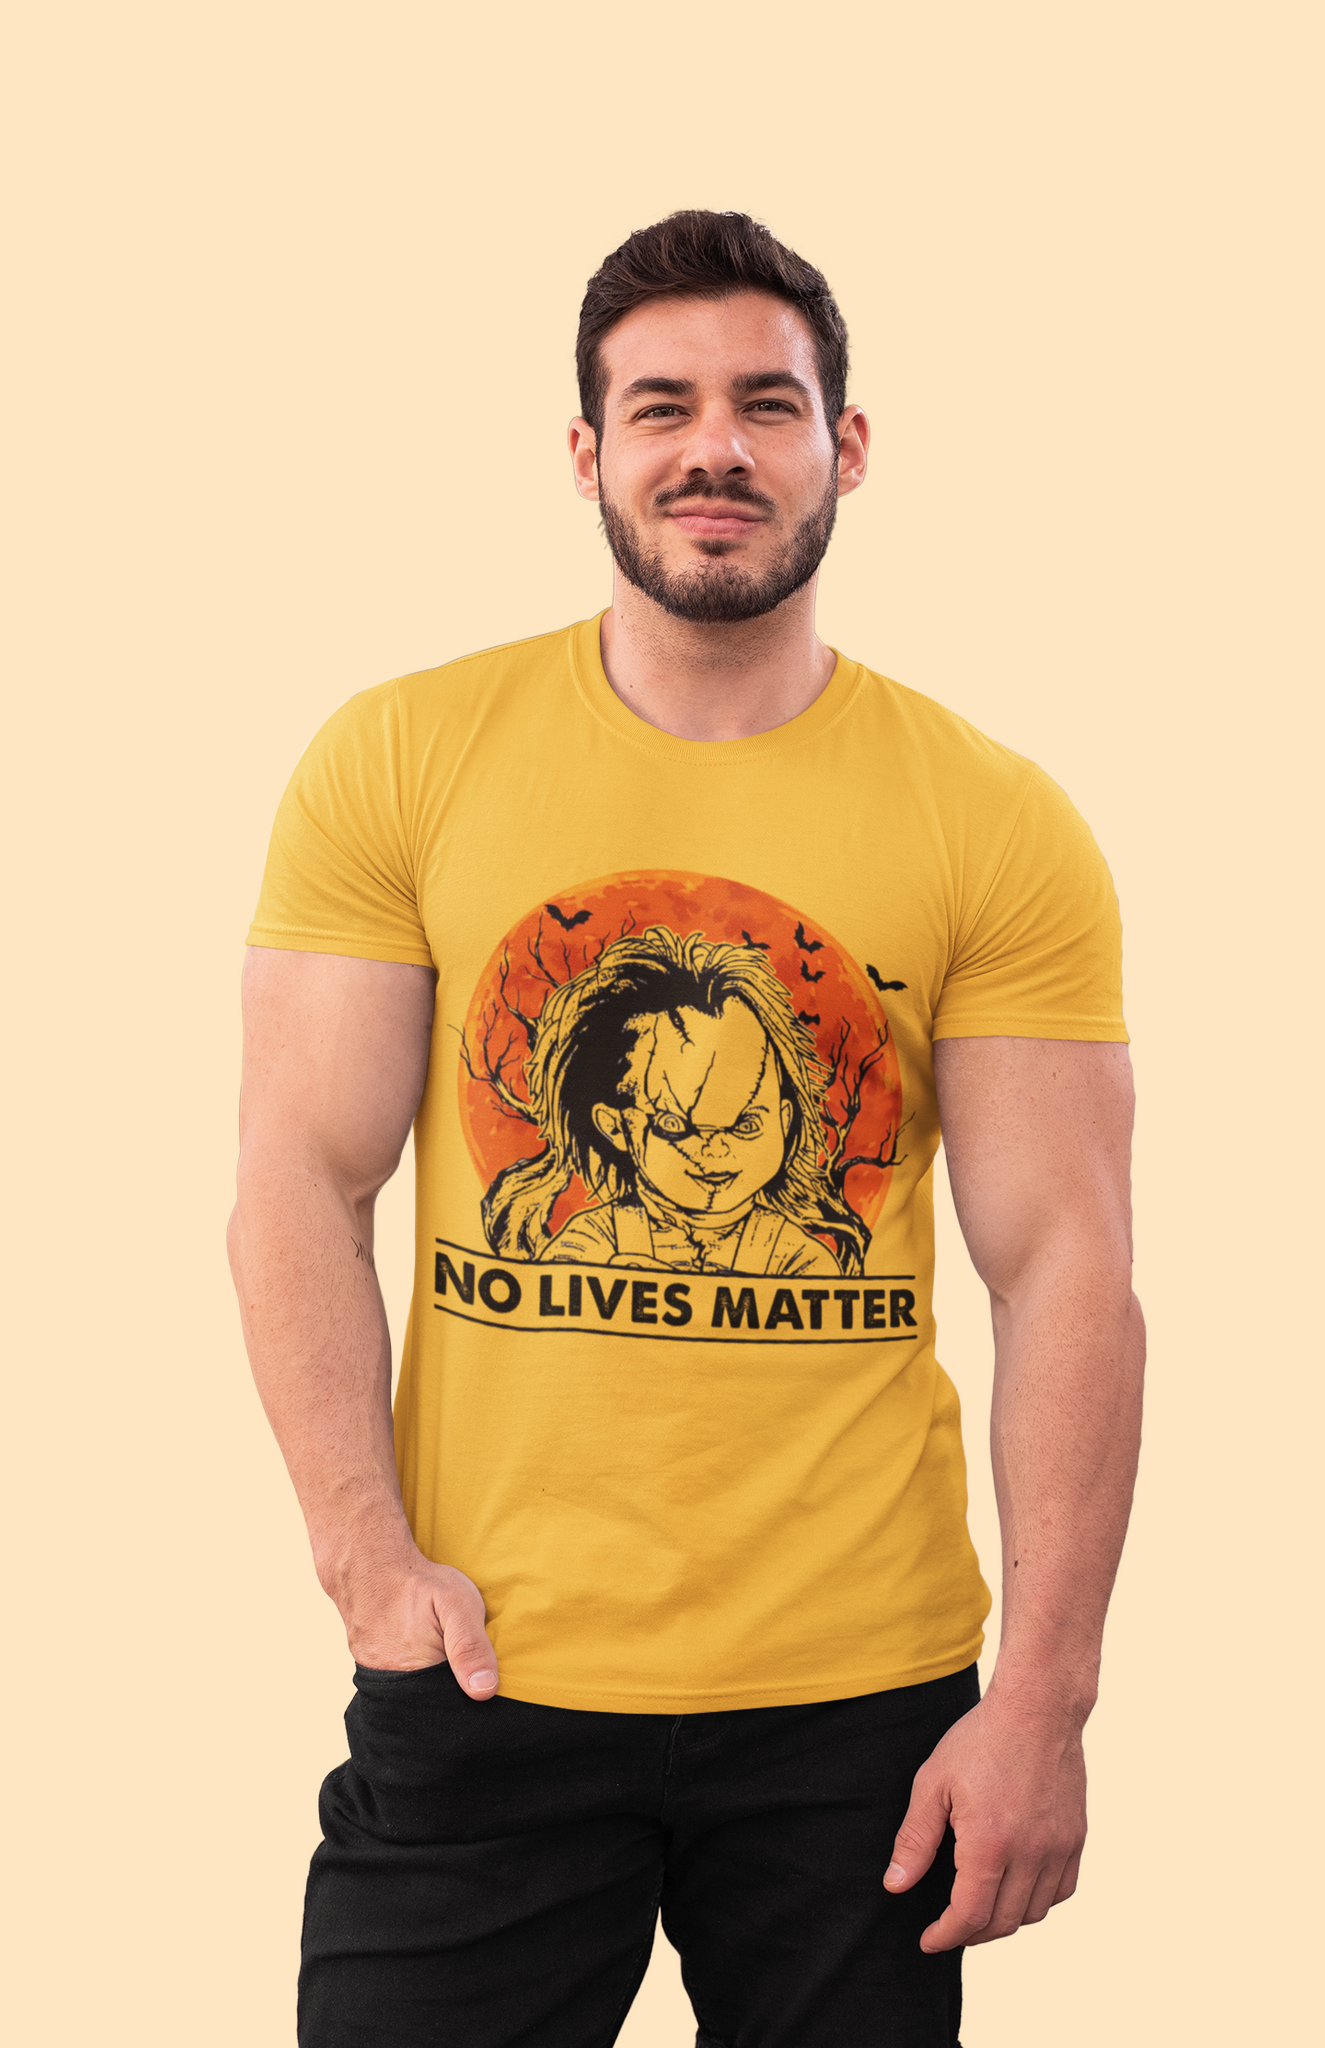 Chucky T Shirt, No Lives Matter T Shirt, Horror Character Shirt, Halloween Gifts